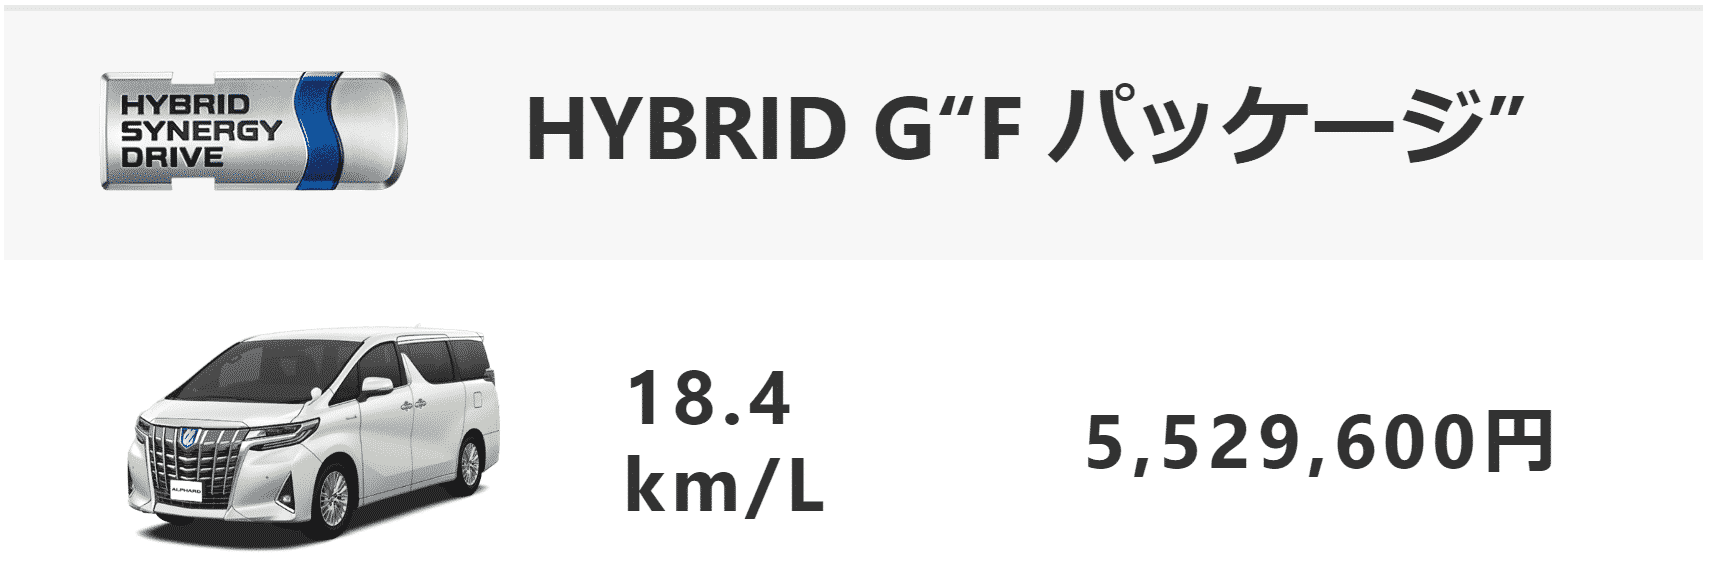 標準ボディ：HYBRID G“F パッケージ”